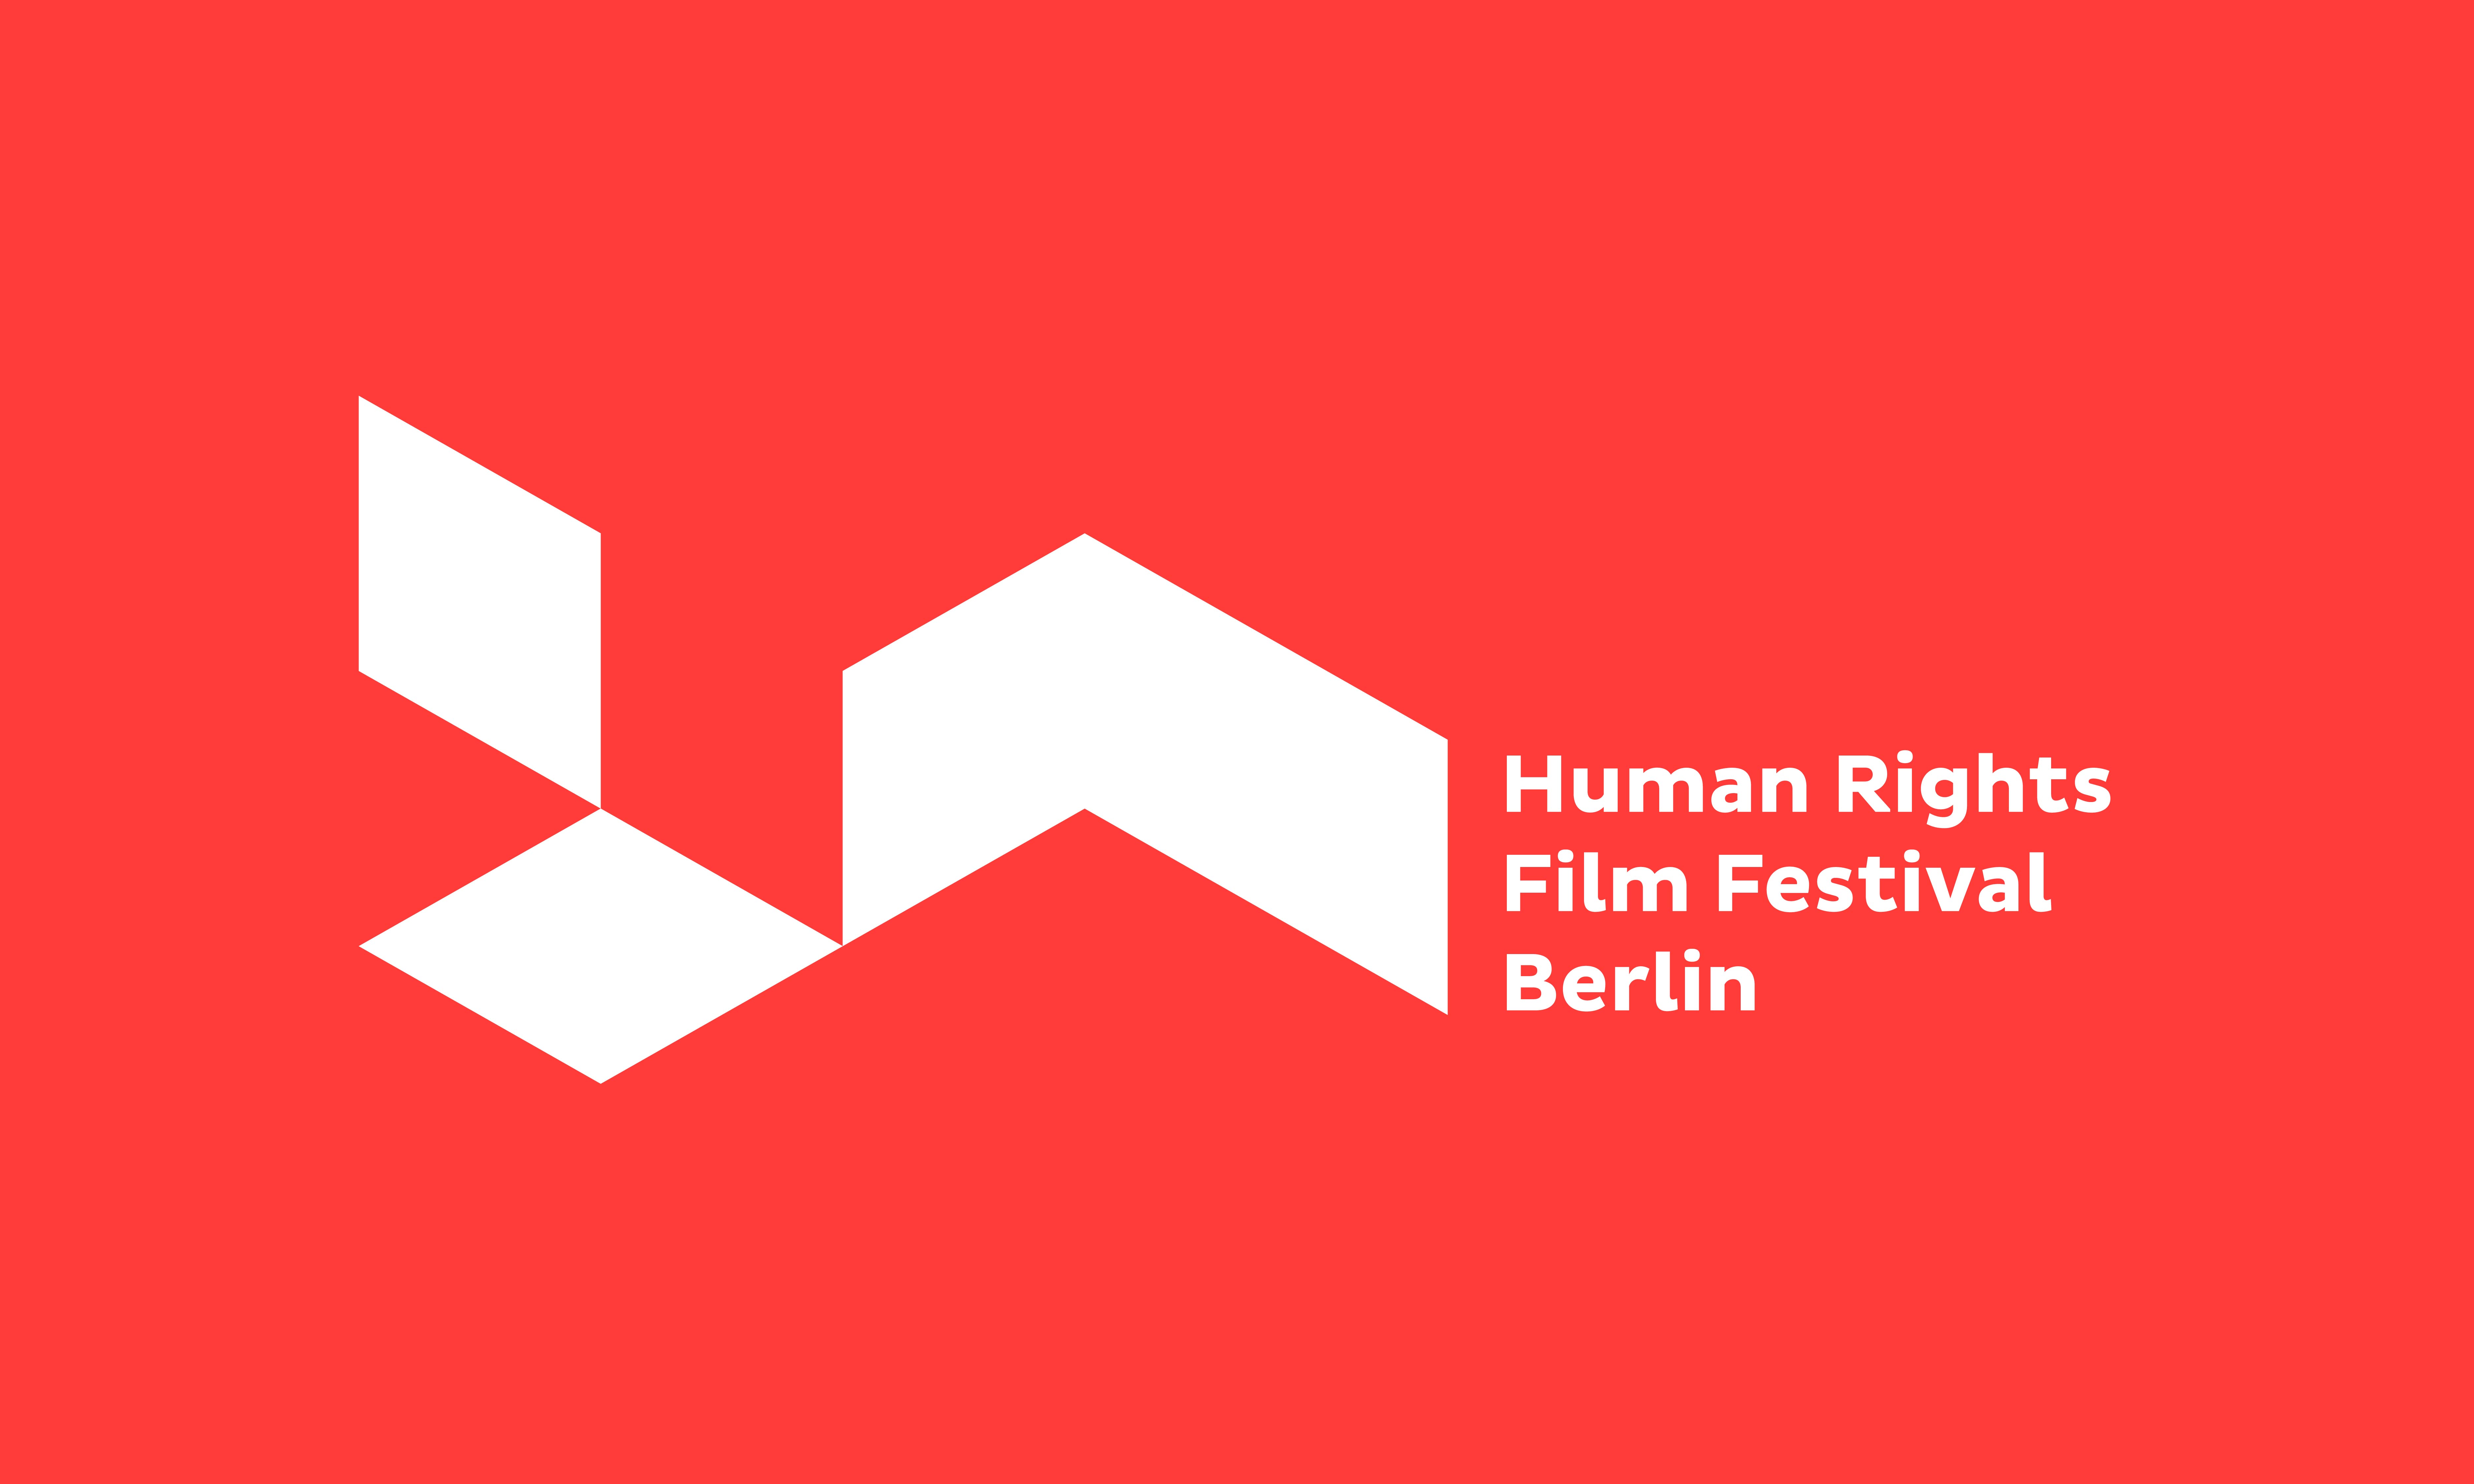 (c) Humanrightsfilmfestivalberlin.de